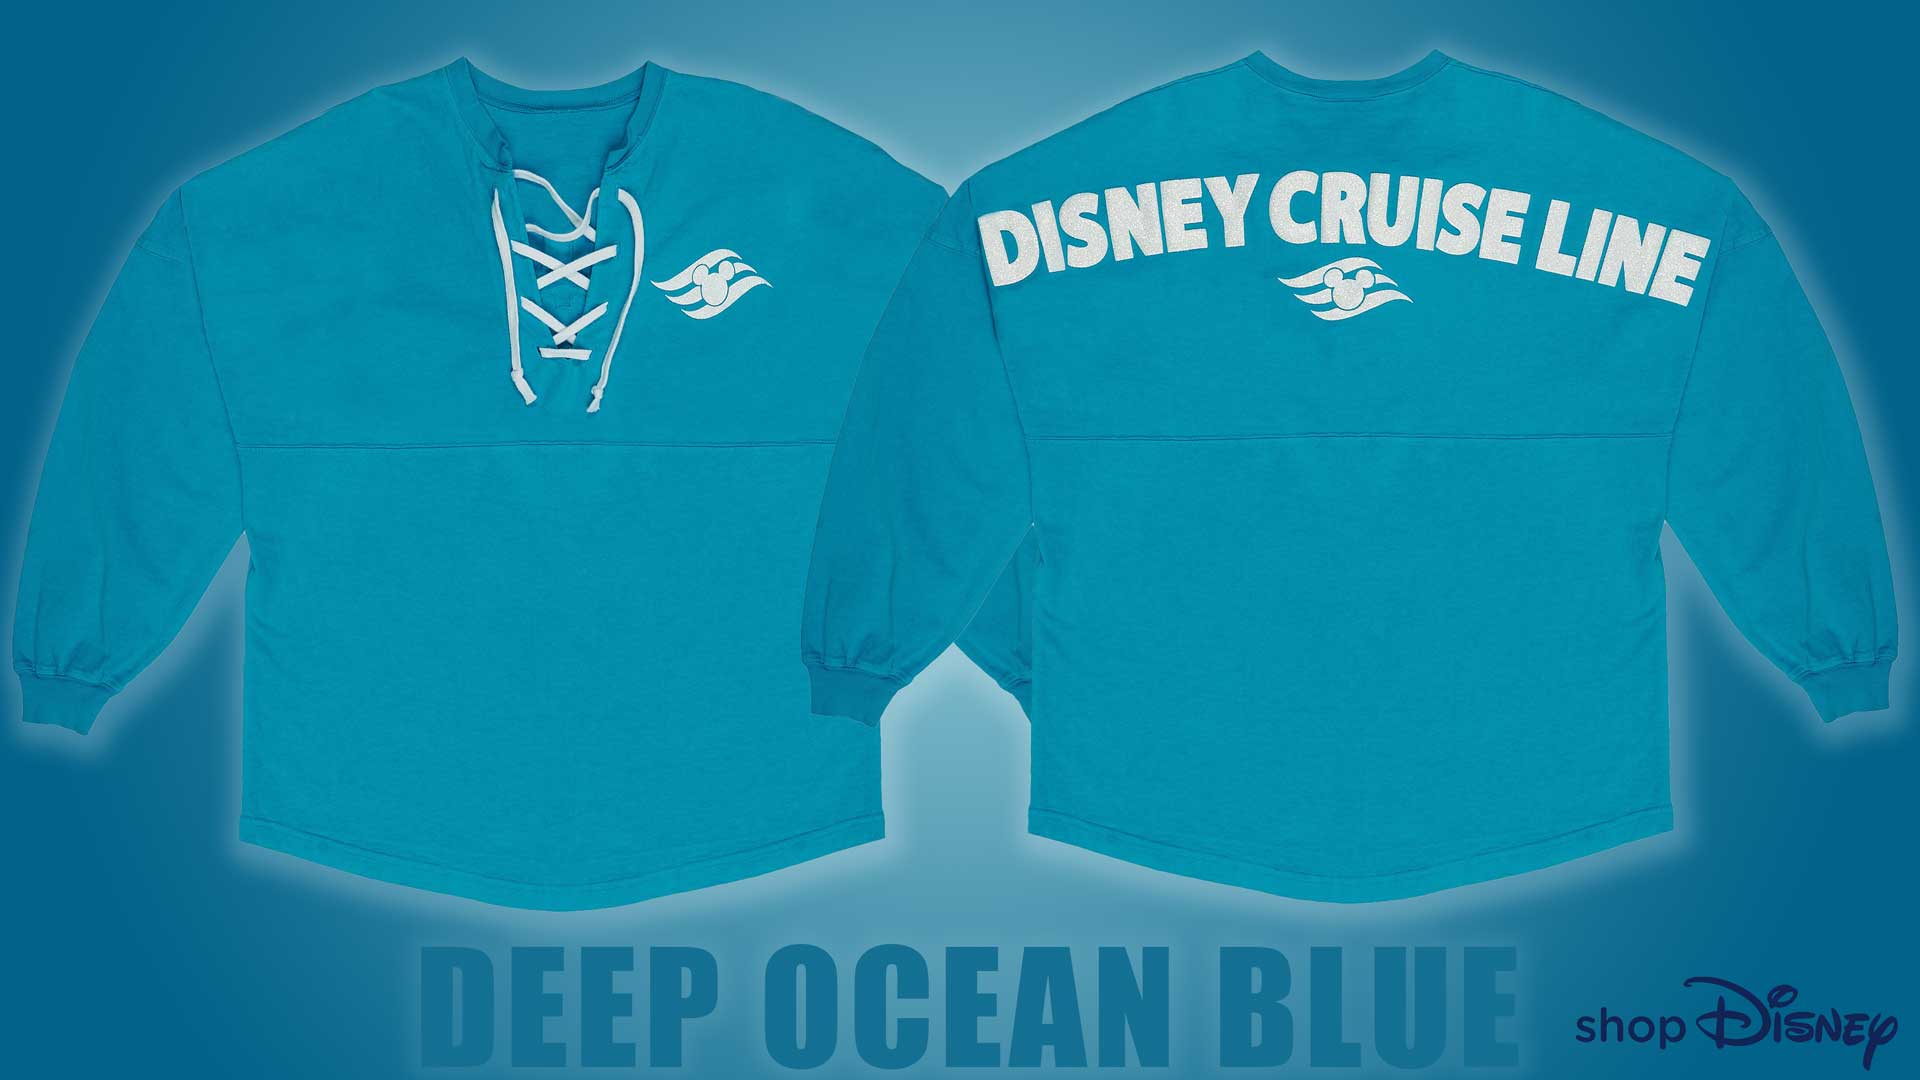 ShopDisney DCL Deep Ocean Blue Spirit Jersey